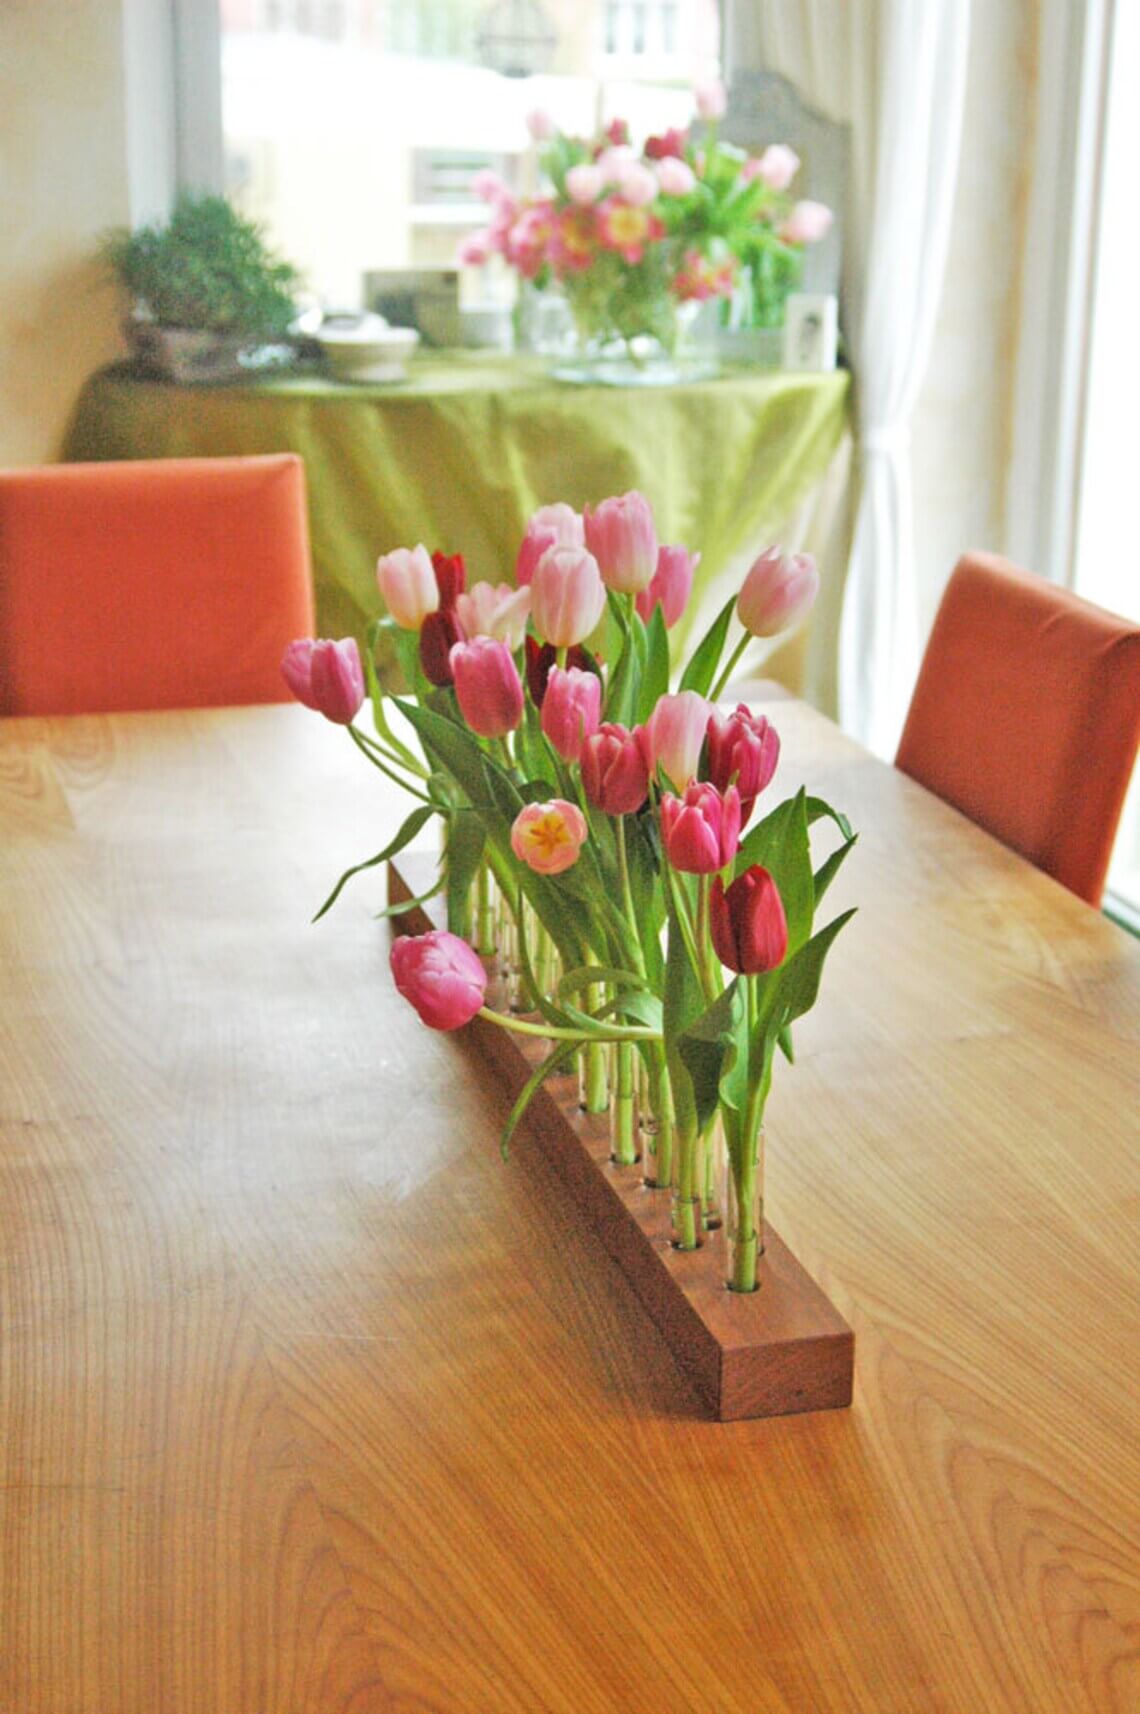 Conversation-Starting Handmade Cherry Wood Vase